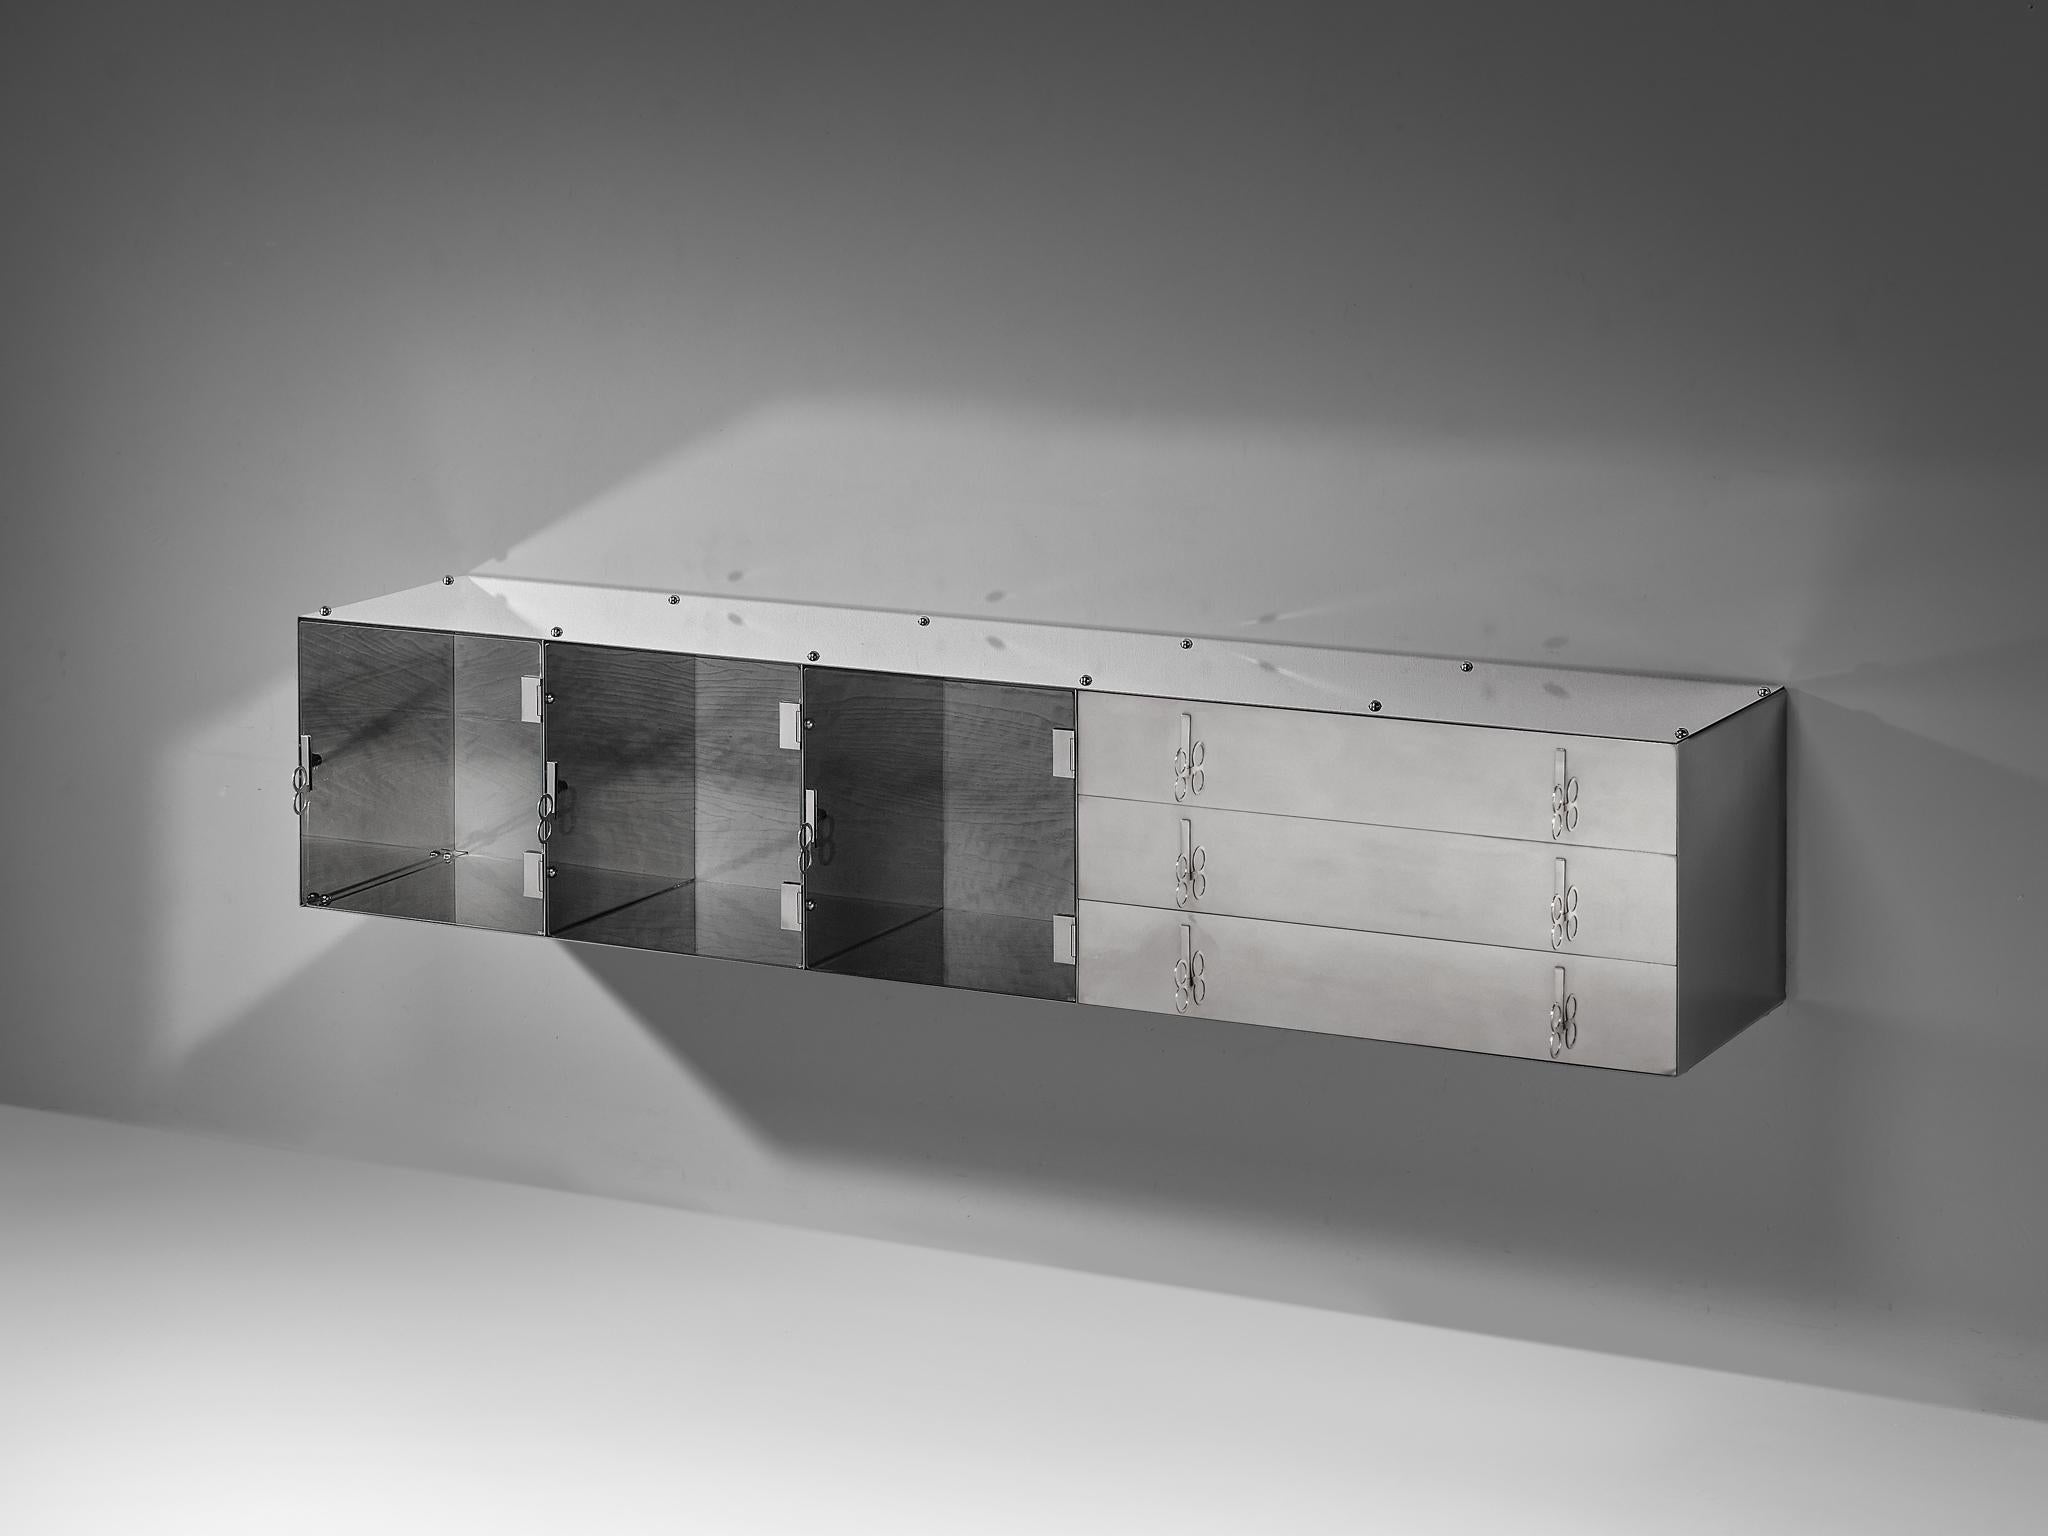 Vittorio Introini für Saporiti, wandmontiertes Sideboard, Aluminium, Glas, Italien, 1960er Jahre 

Außergewöhnliches Sideboard, entworfen von Vittorio Introini für Saporiti in den 1960er Jahren. Das rationalistische Sideboard aus Aluminium und Glas